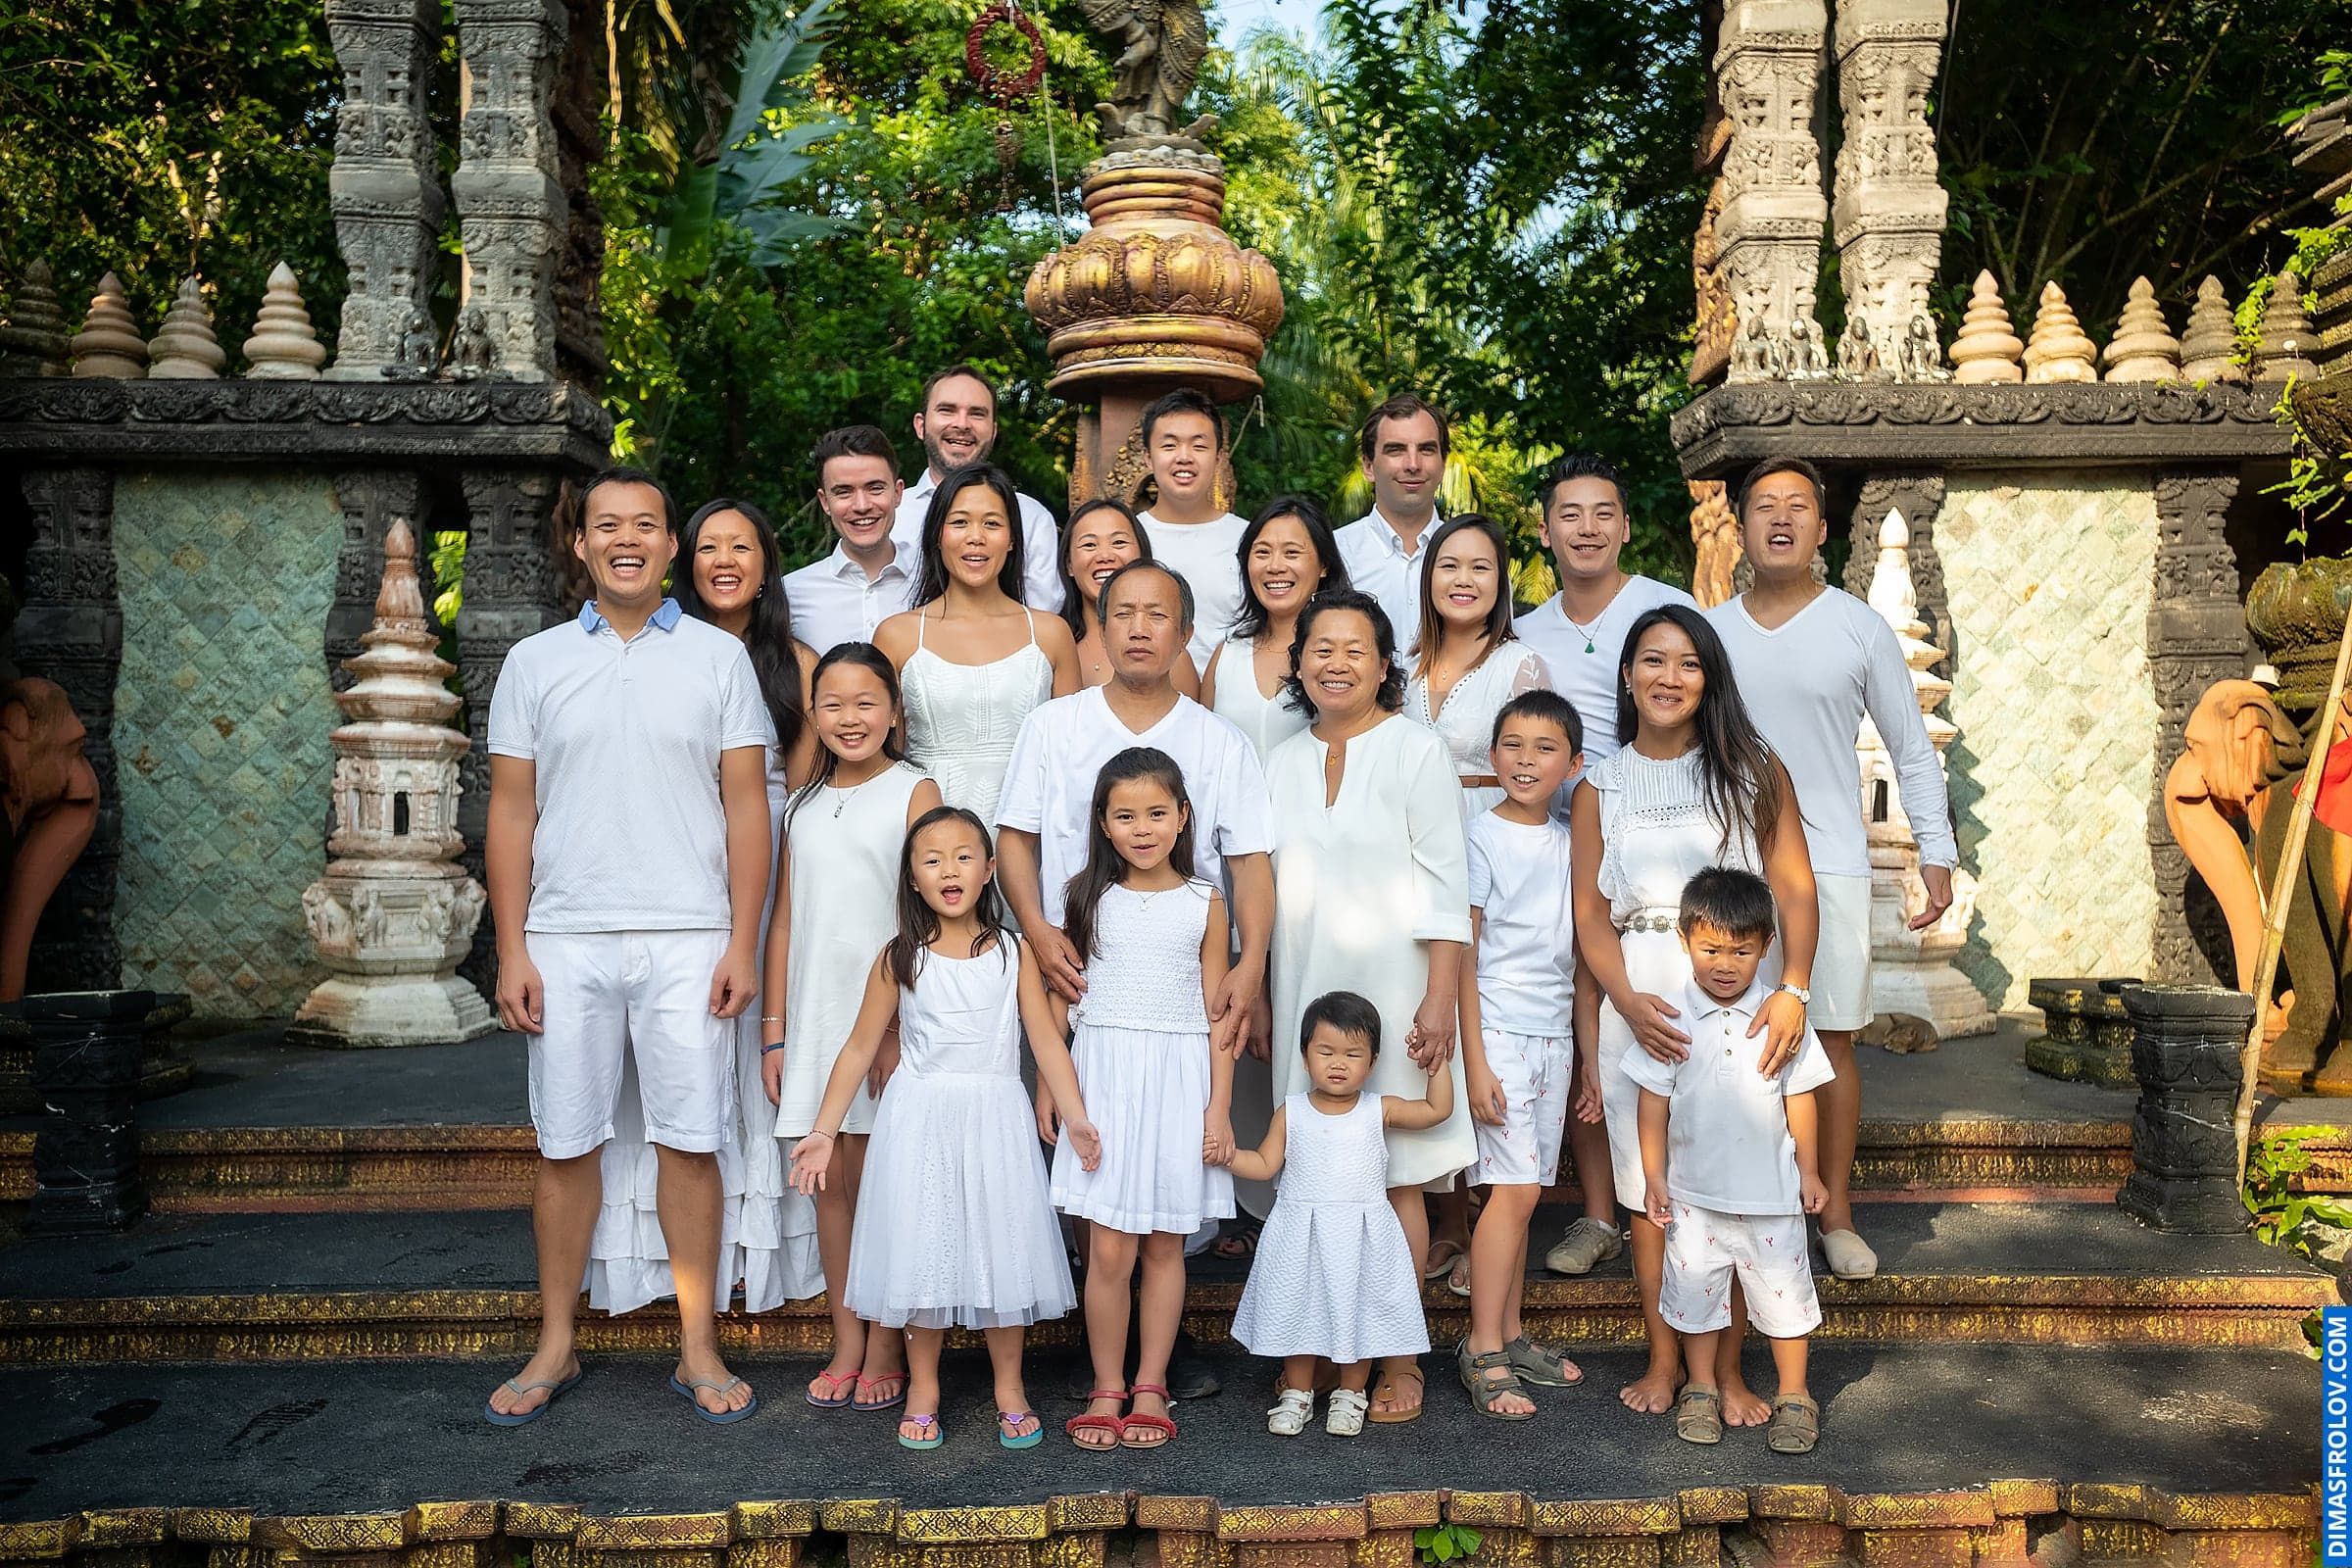 ถ่ายภาพกับครอบครัวใหญ่ ณ เกาะสมุย. ช่างภาพ ดีมัส โฟรล็อกซ์. บาทต่อภาพ1795